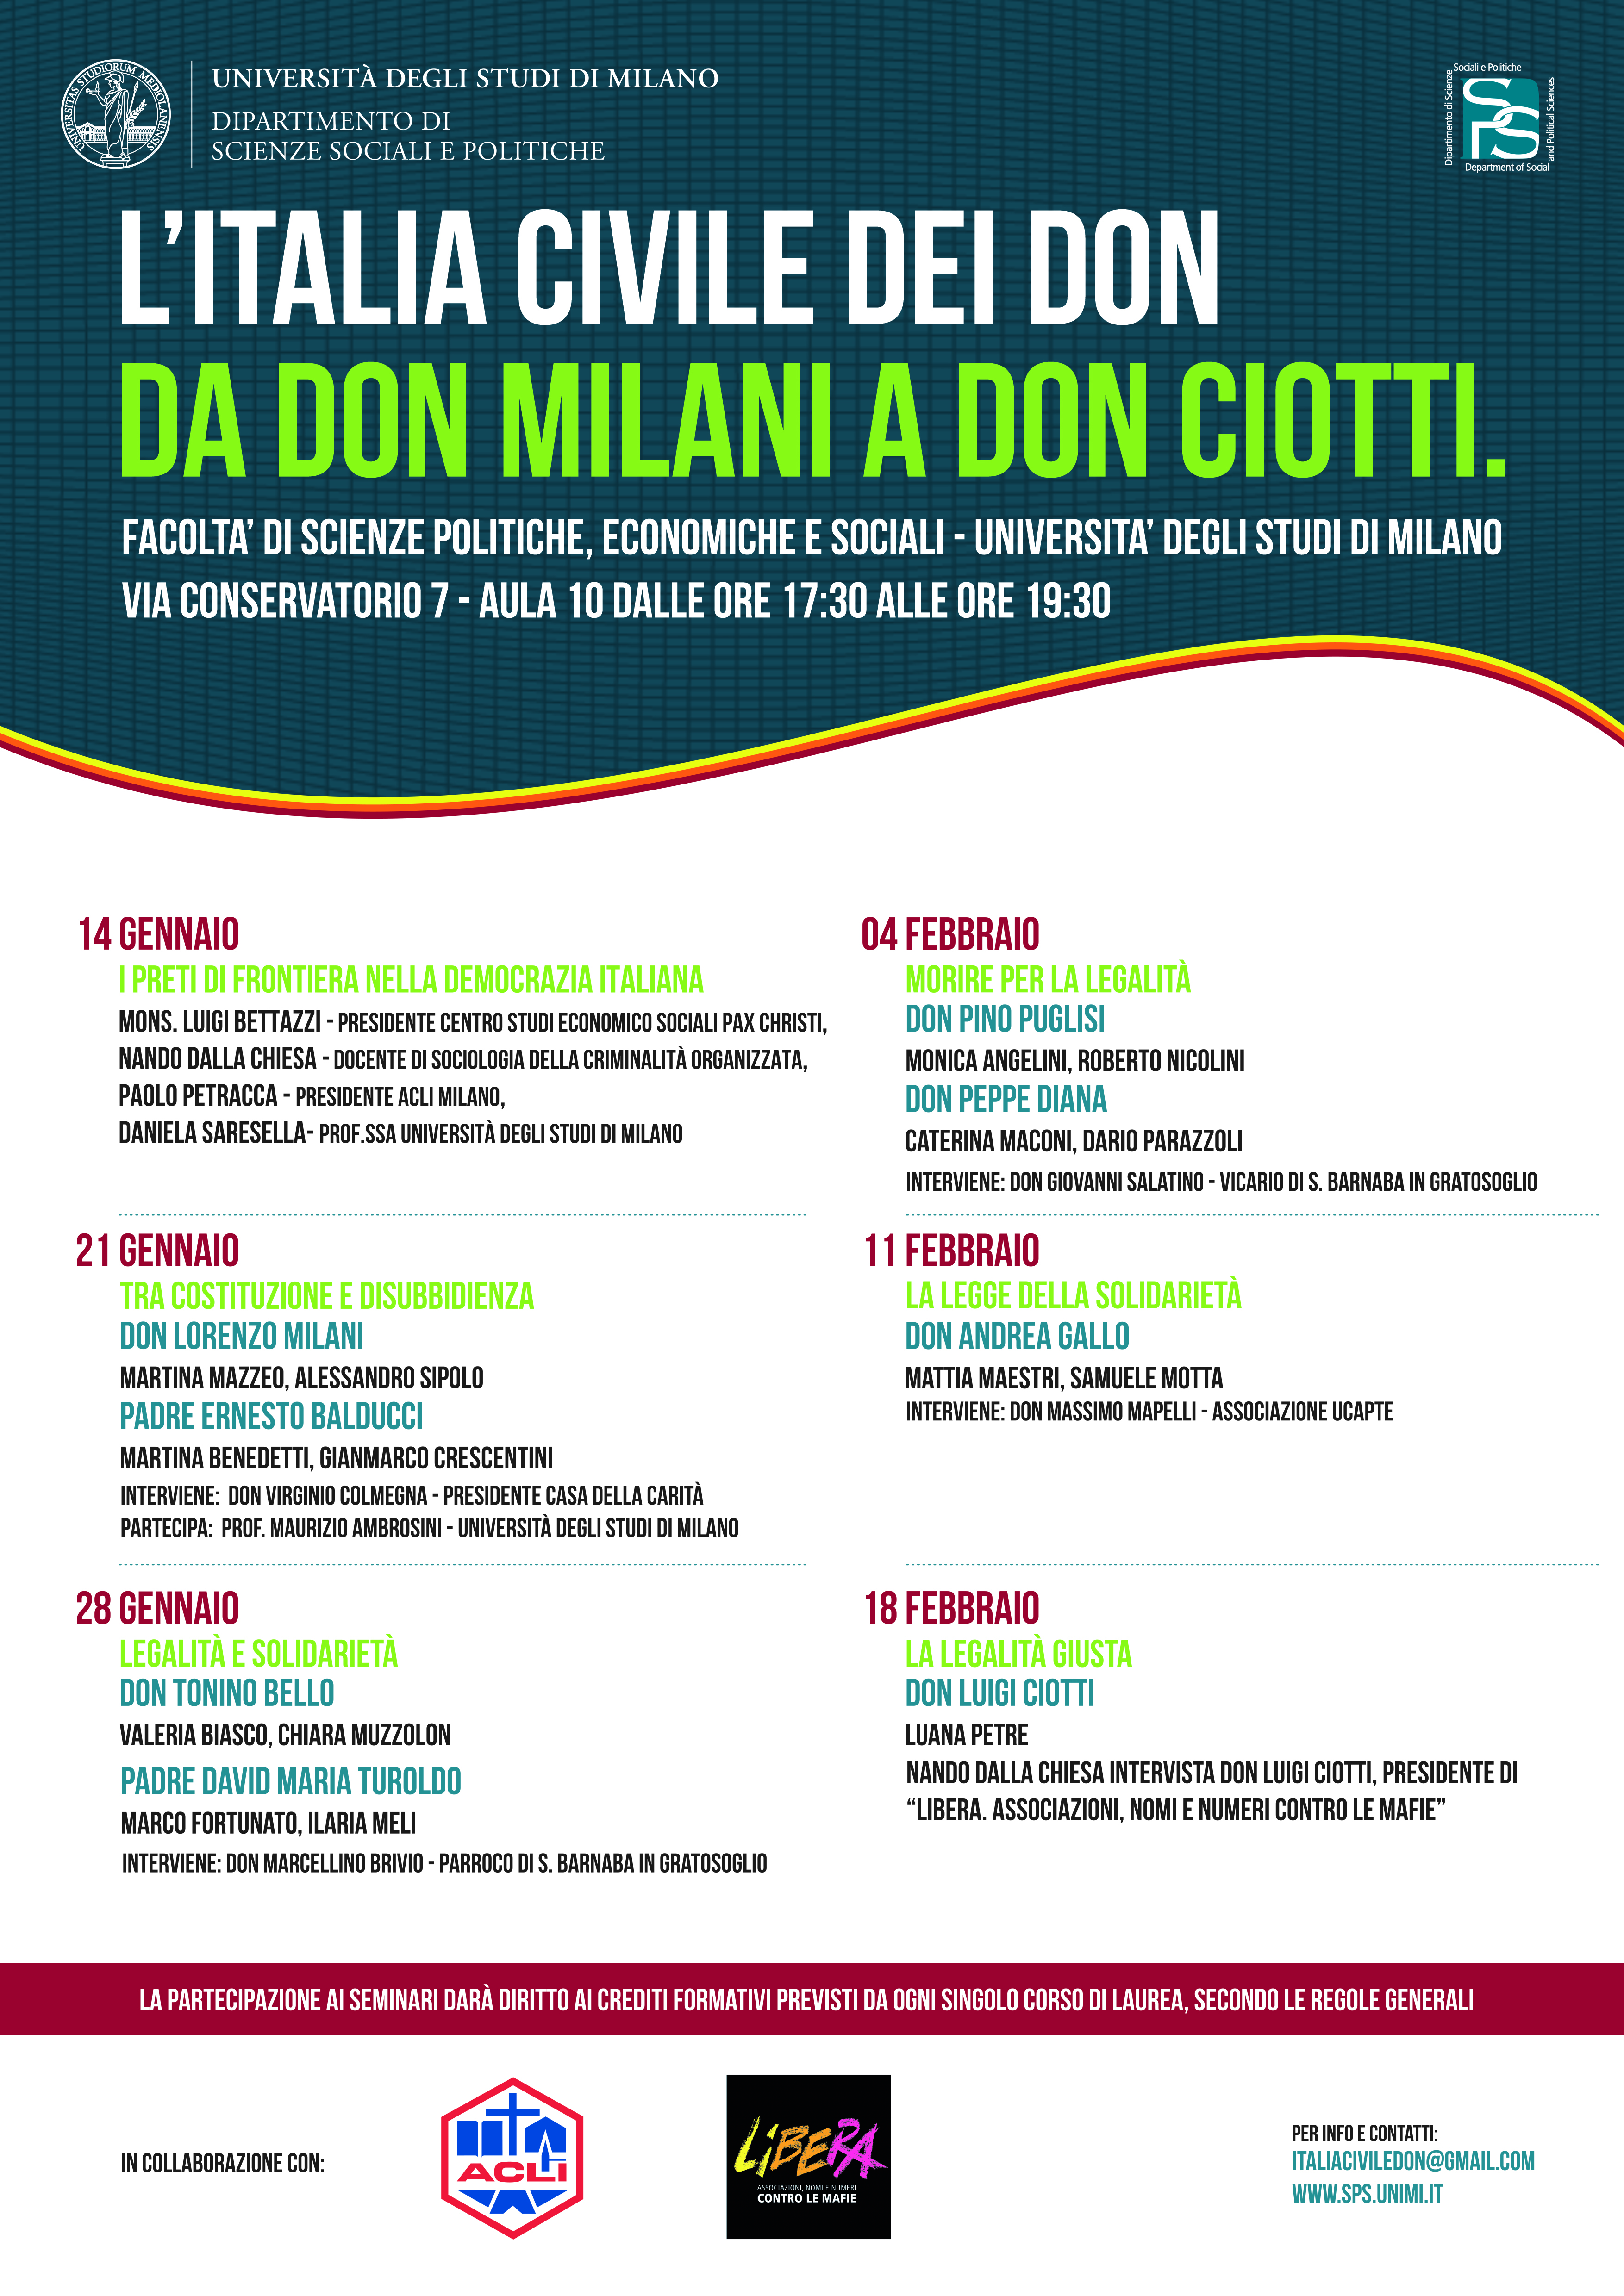 L’Italia civile dei don, da don Milani a don Ciotti